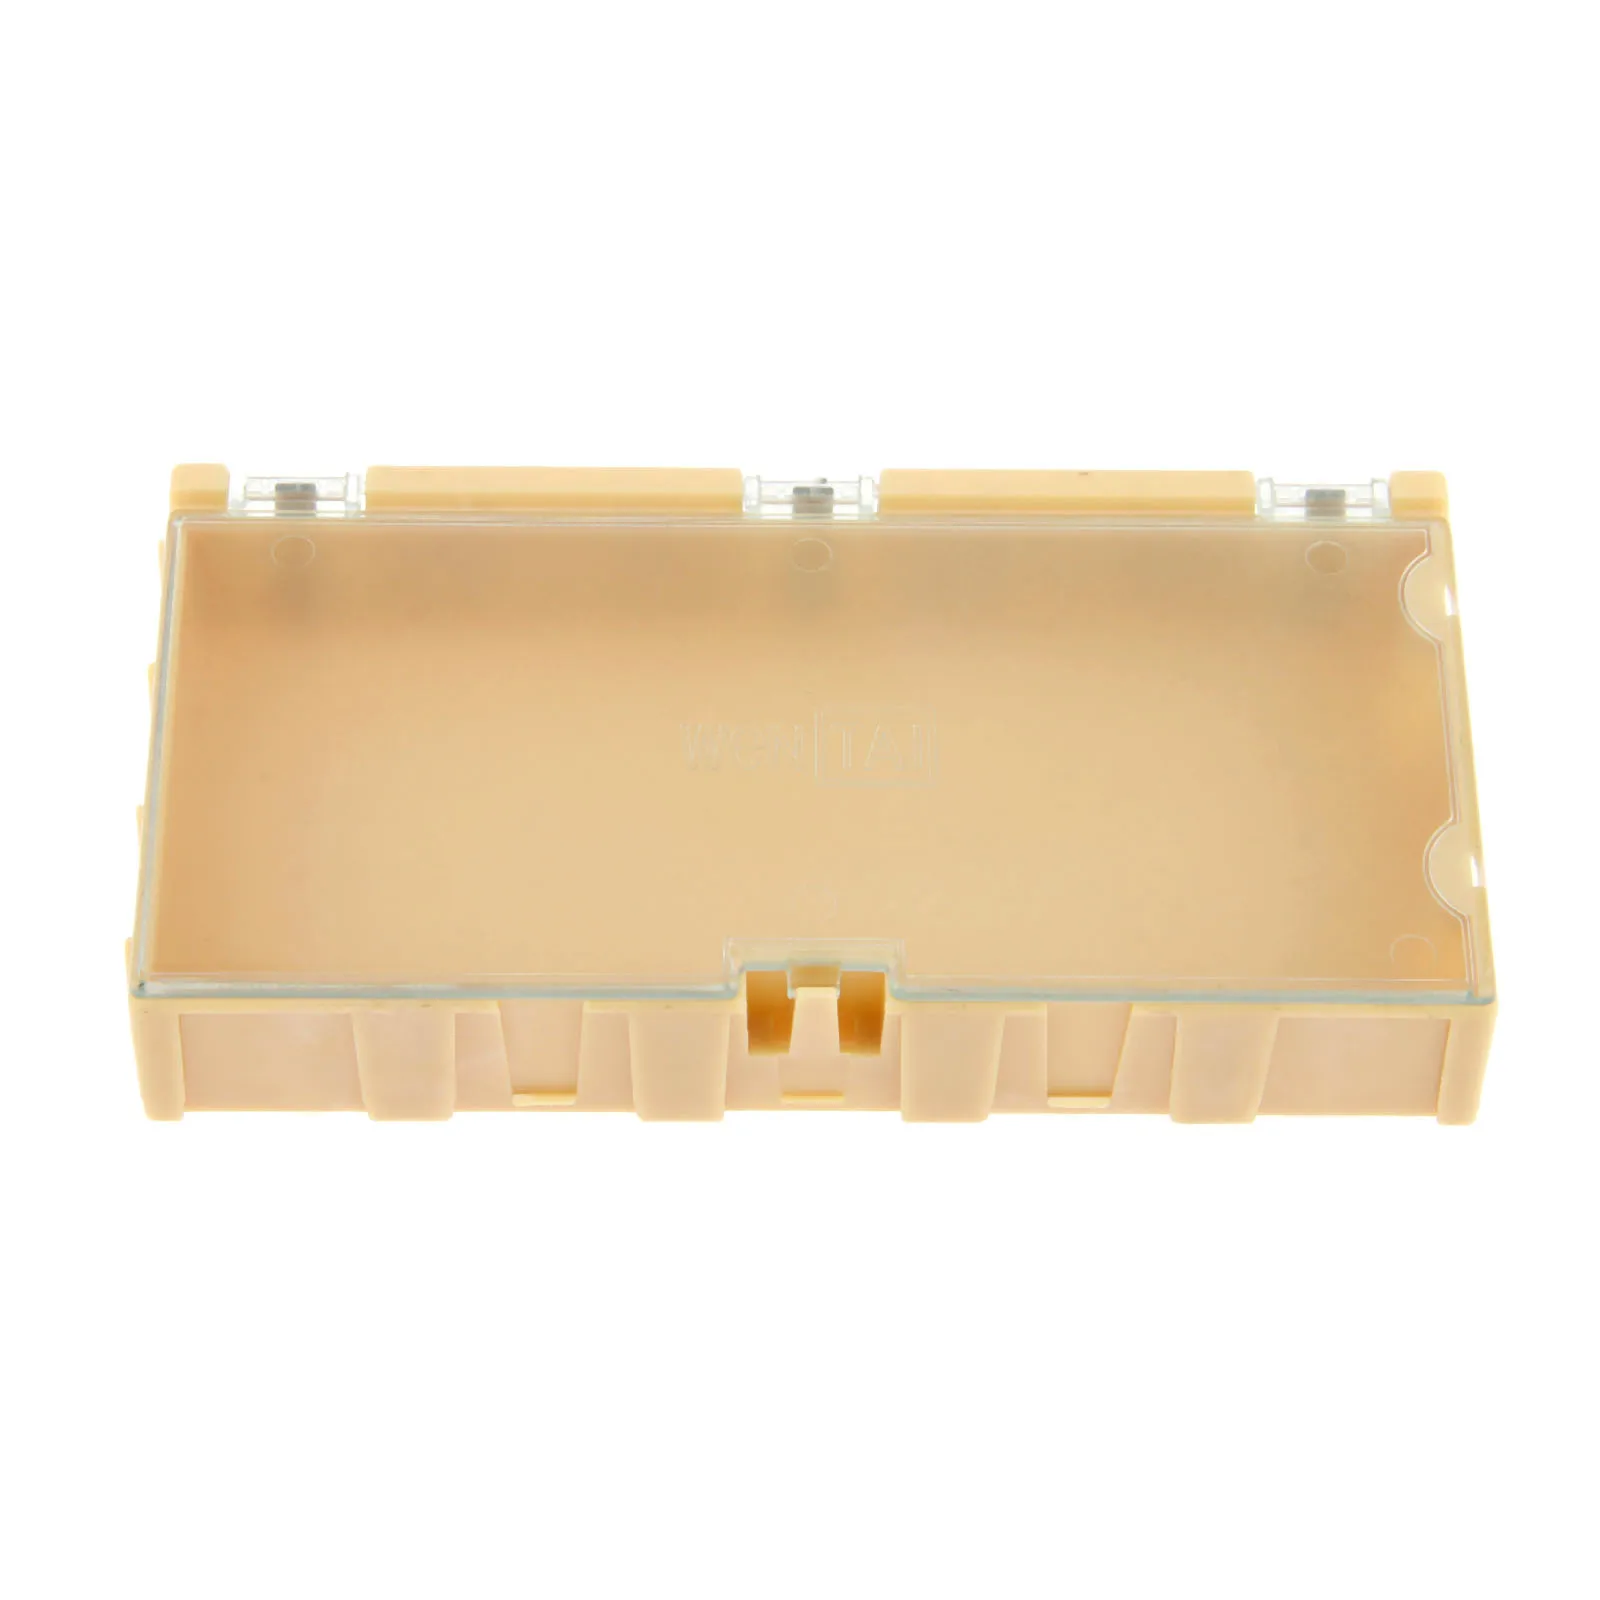 DRELD 1 шт. 4# желтая коробка для хранения компонентов квадратные компоненты программной платы коробки SMT SMD комбинированные коробки инструмент пластиковый корпус 125*63*21 мм